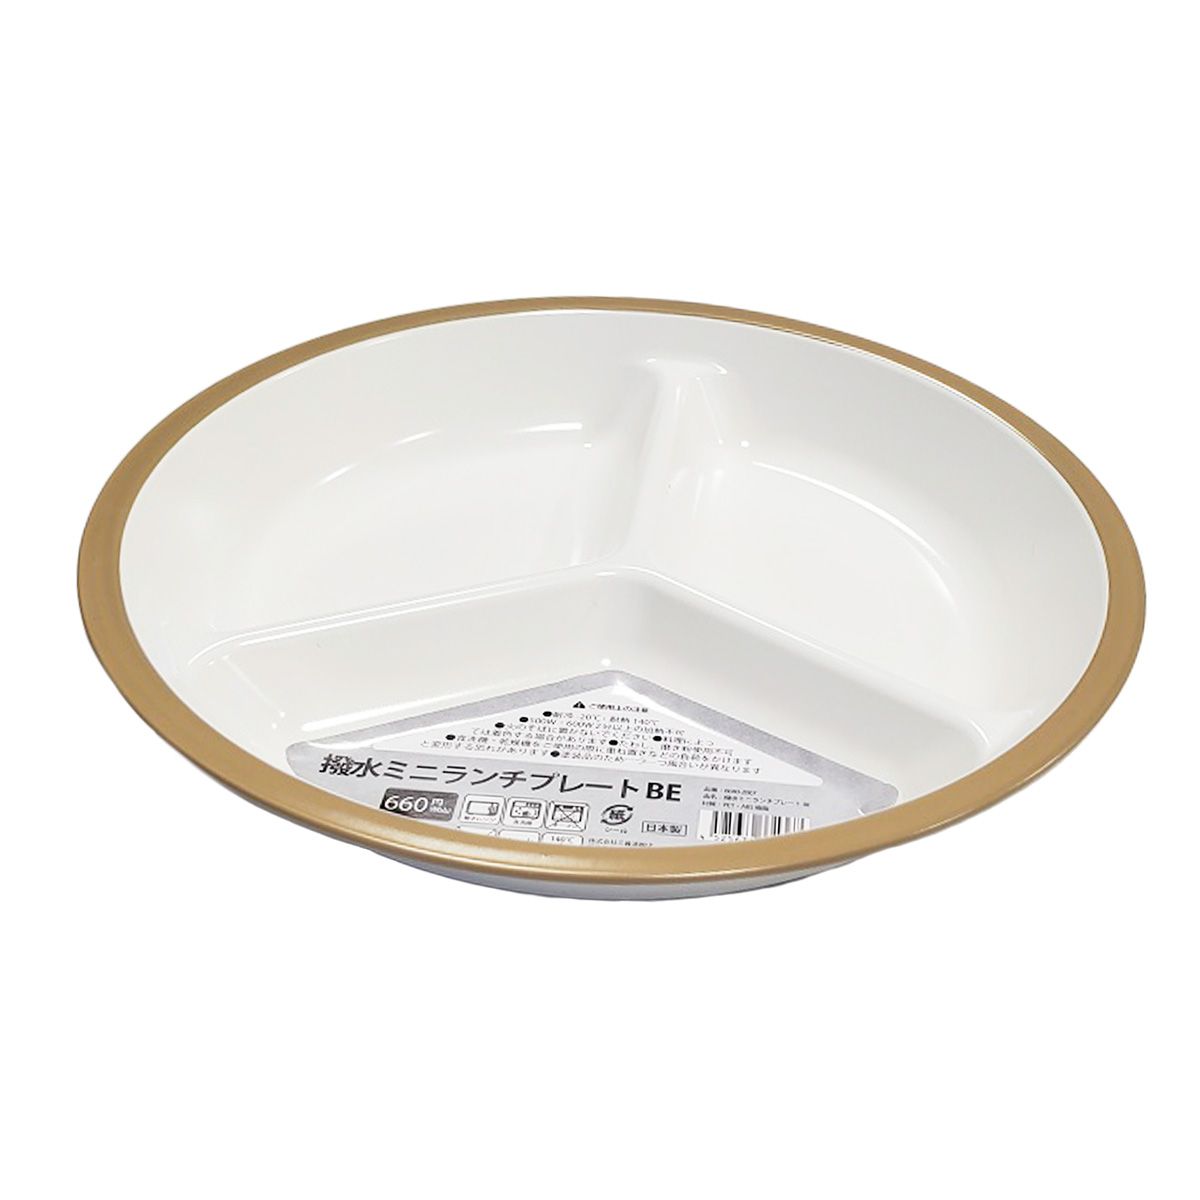 皿 仕切り皿 撥水ミニランチプレート ワンプレートご飯 ベージュ 342028